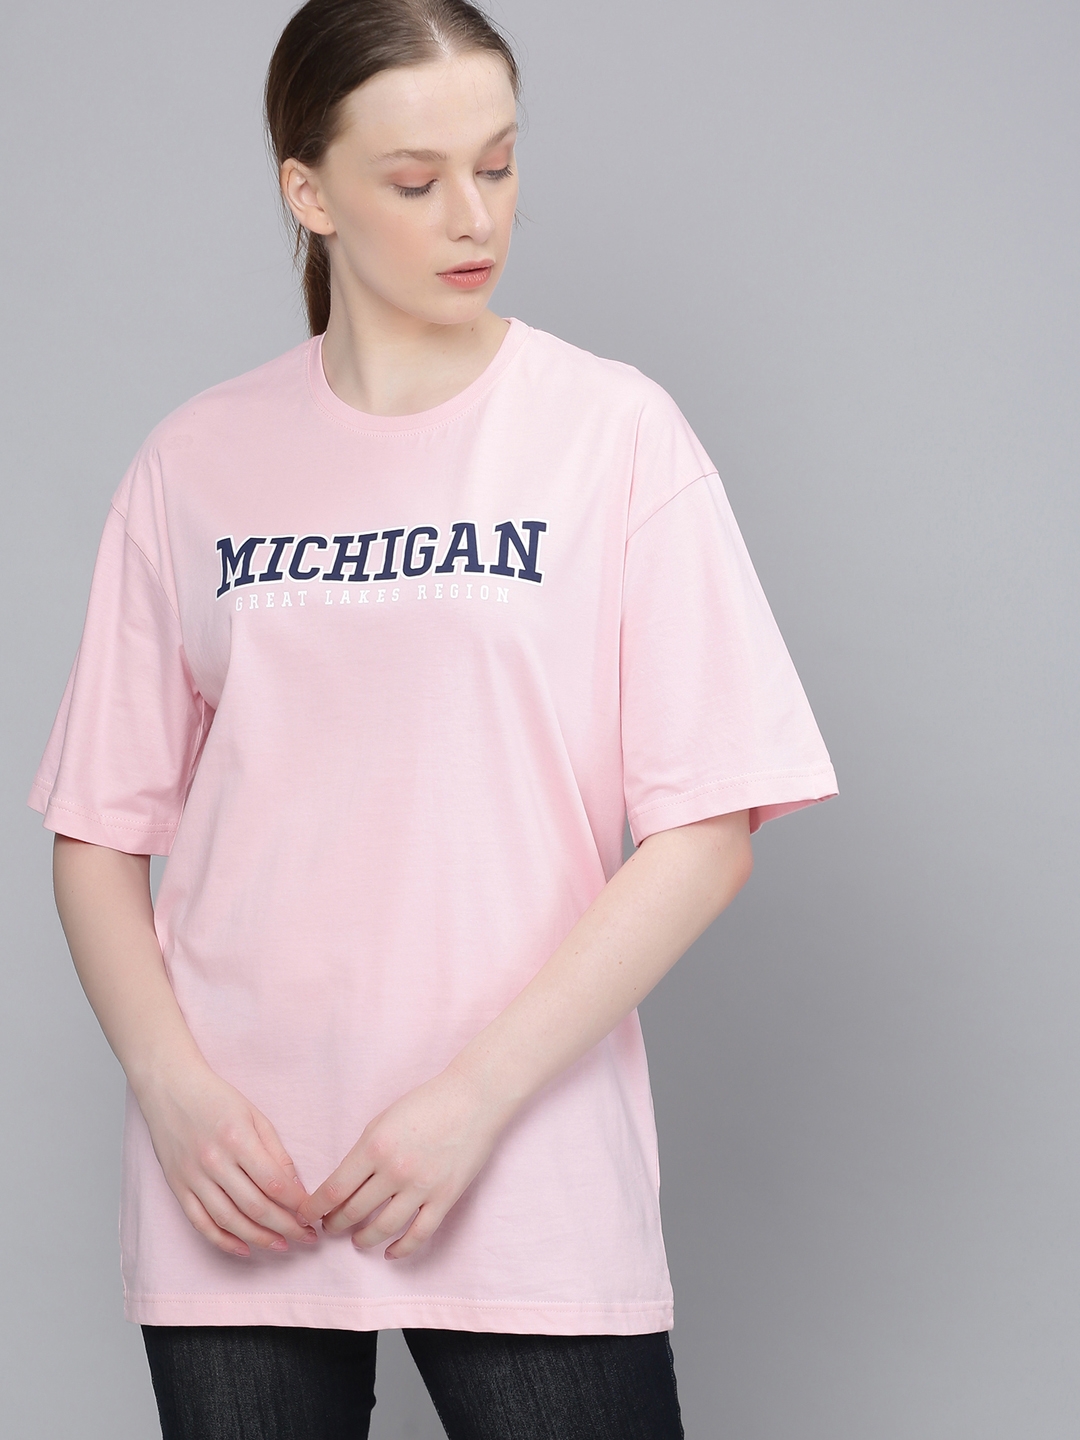 Dillinger | Dillinger Women Pink Oversized Printed T-Shirt